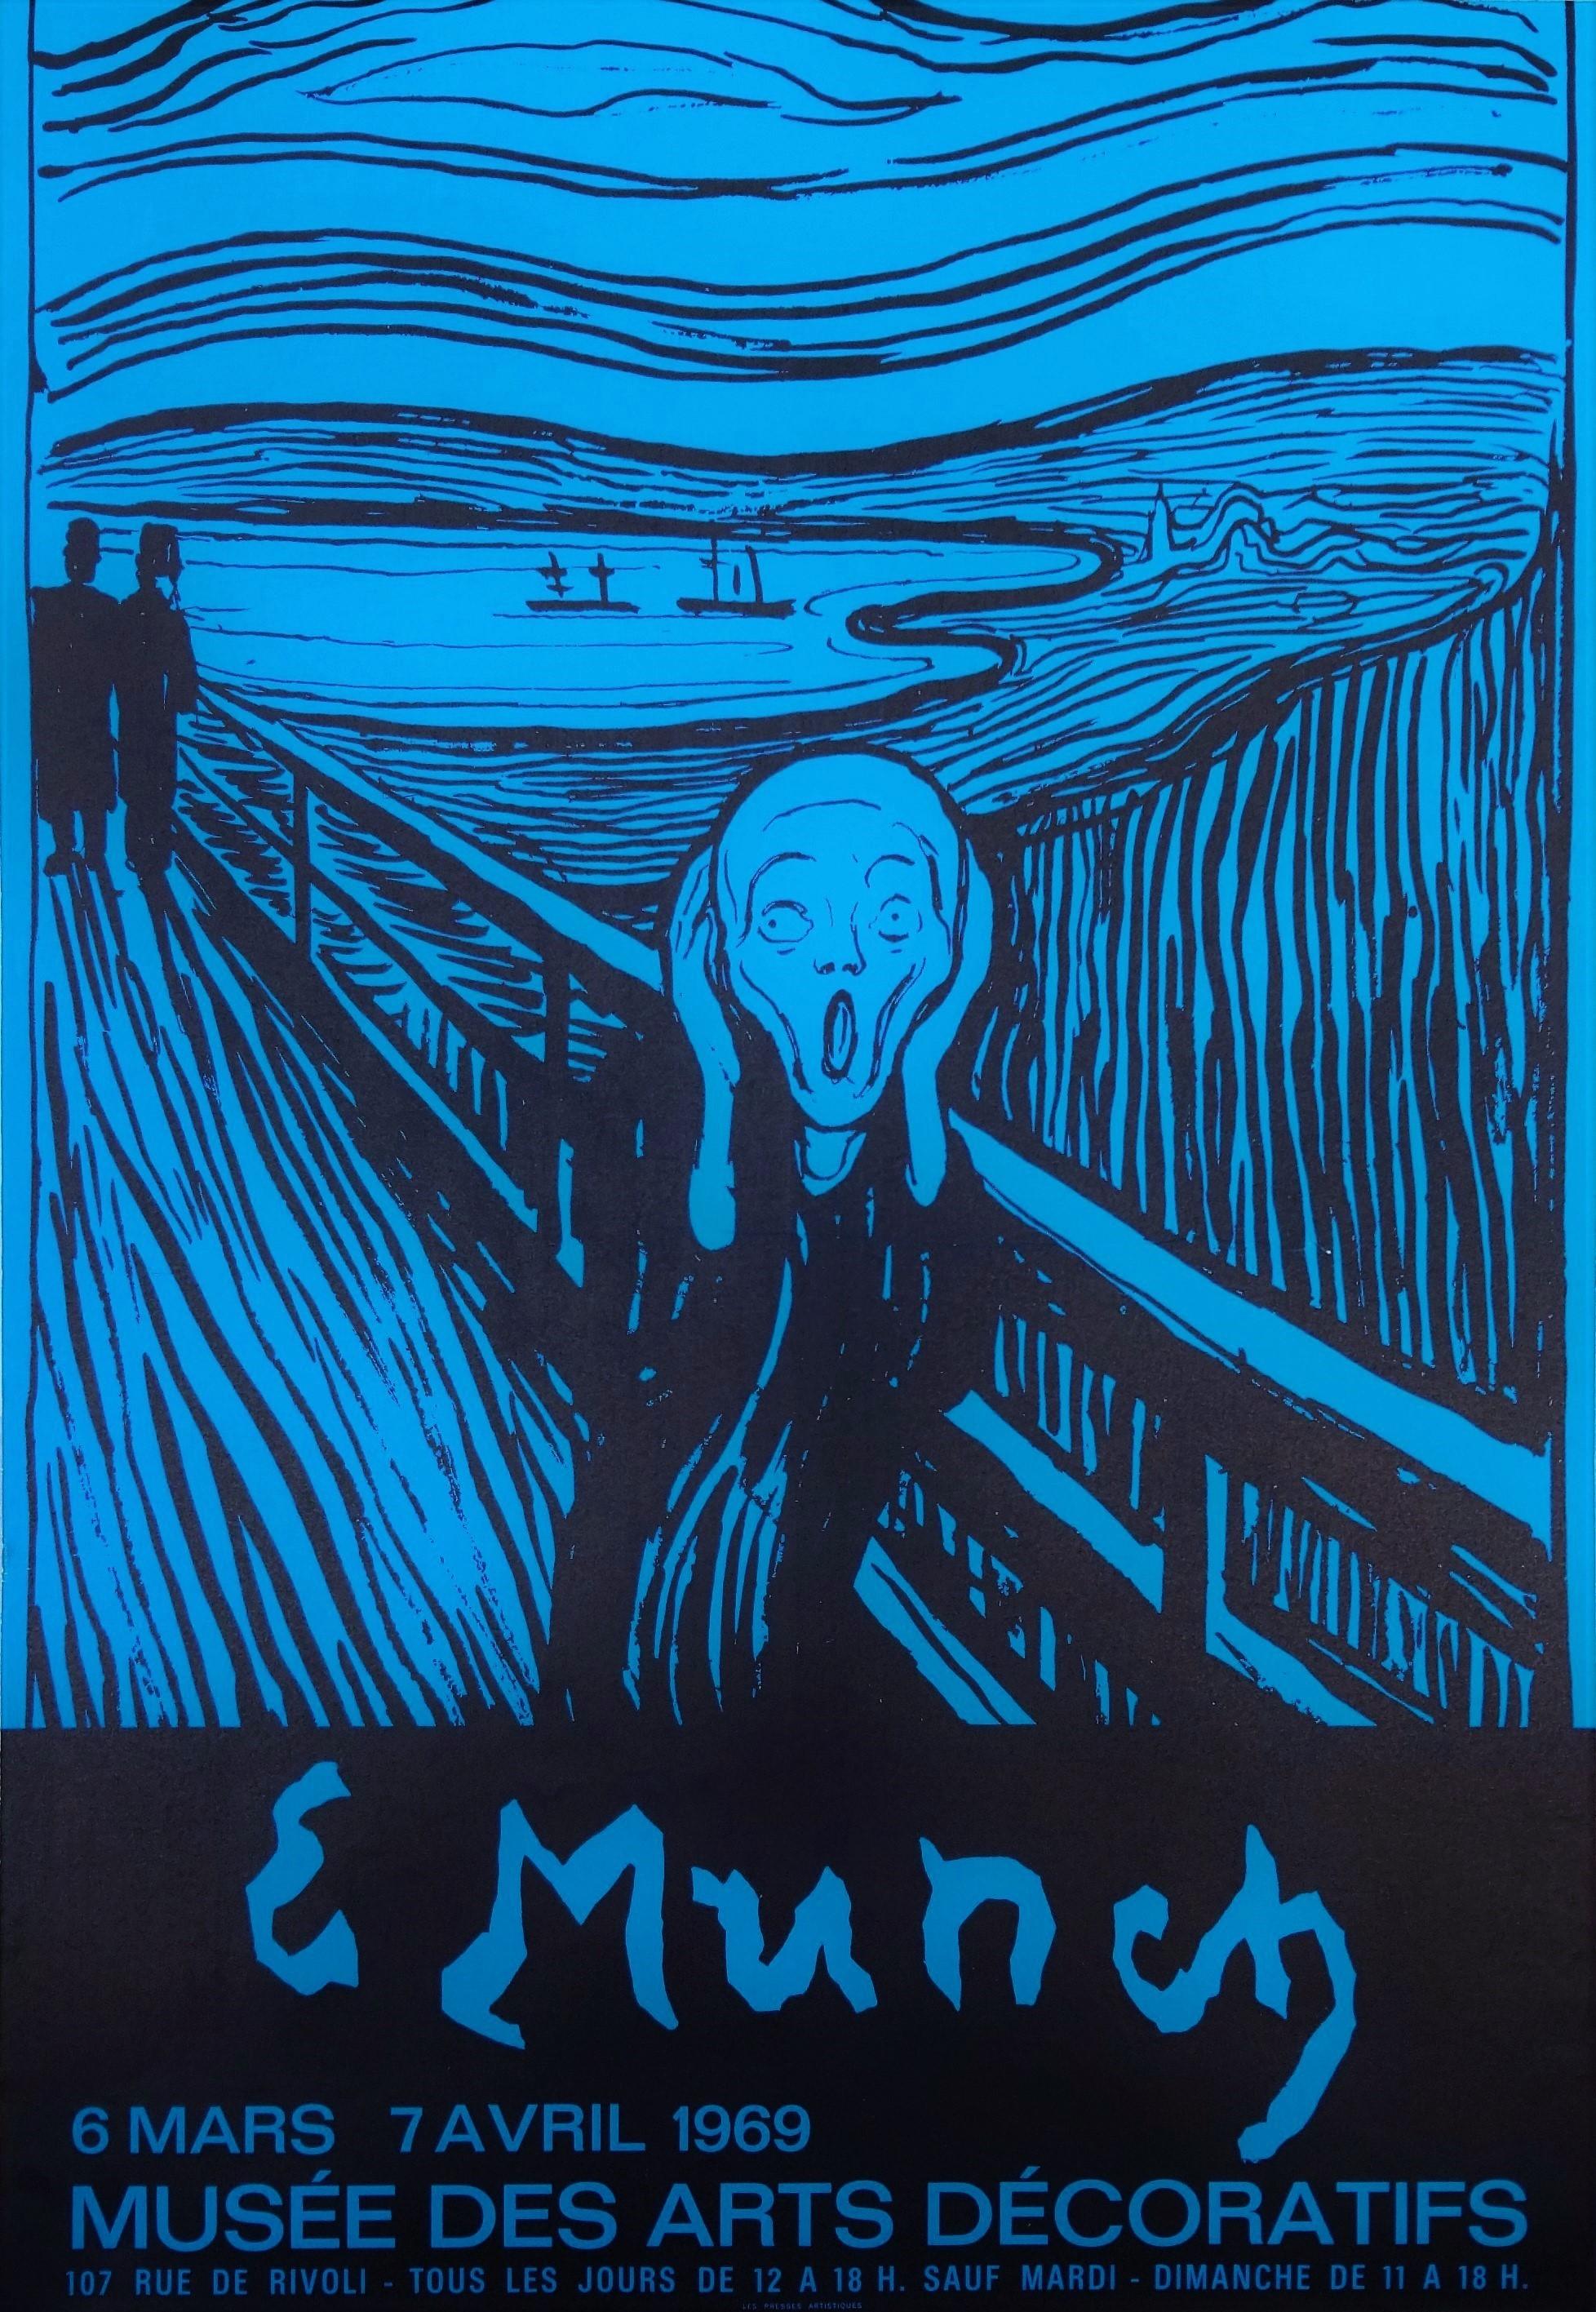 Artistics : (d'après) Edvard Munch (Norvégien, 1863-1944)
Titre : "Musée des Arts Décoratifs (Le Cri)"
Année : 1969
Support : Lithographie originale, affiche d'exposition sur papier vélin léger
Edition limitée : Inconnu
Imprimeur : Les Presses